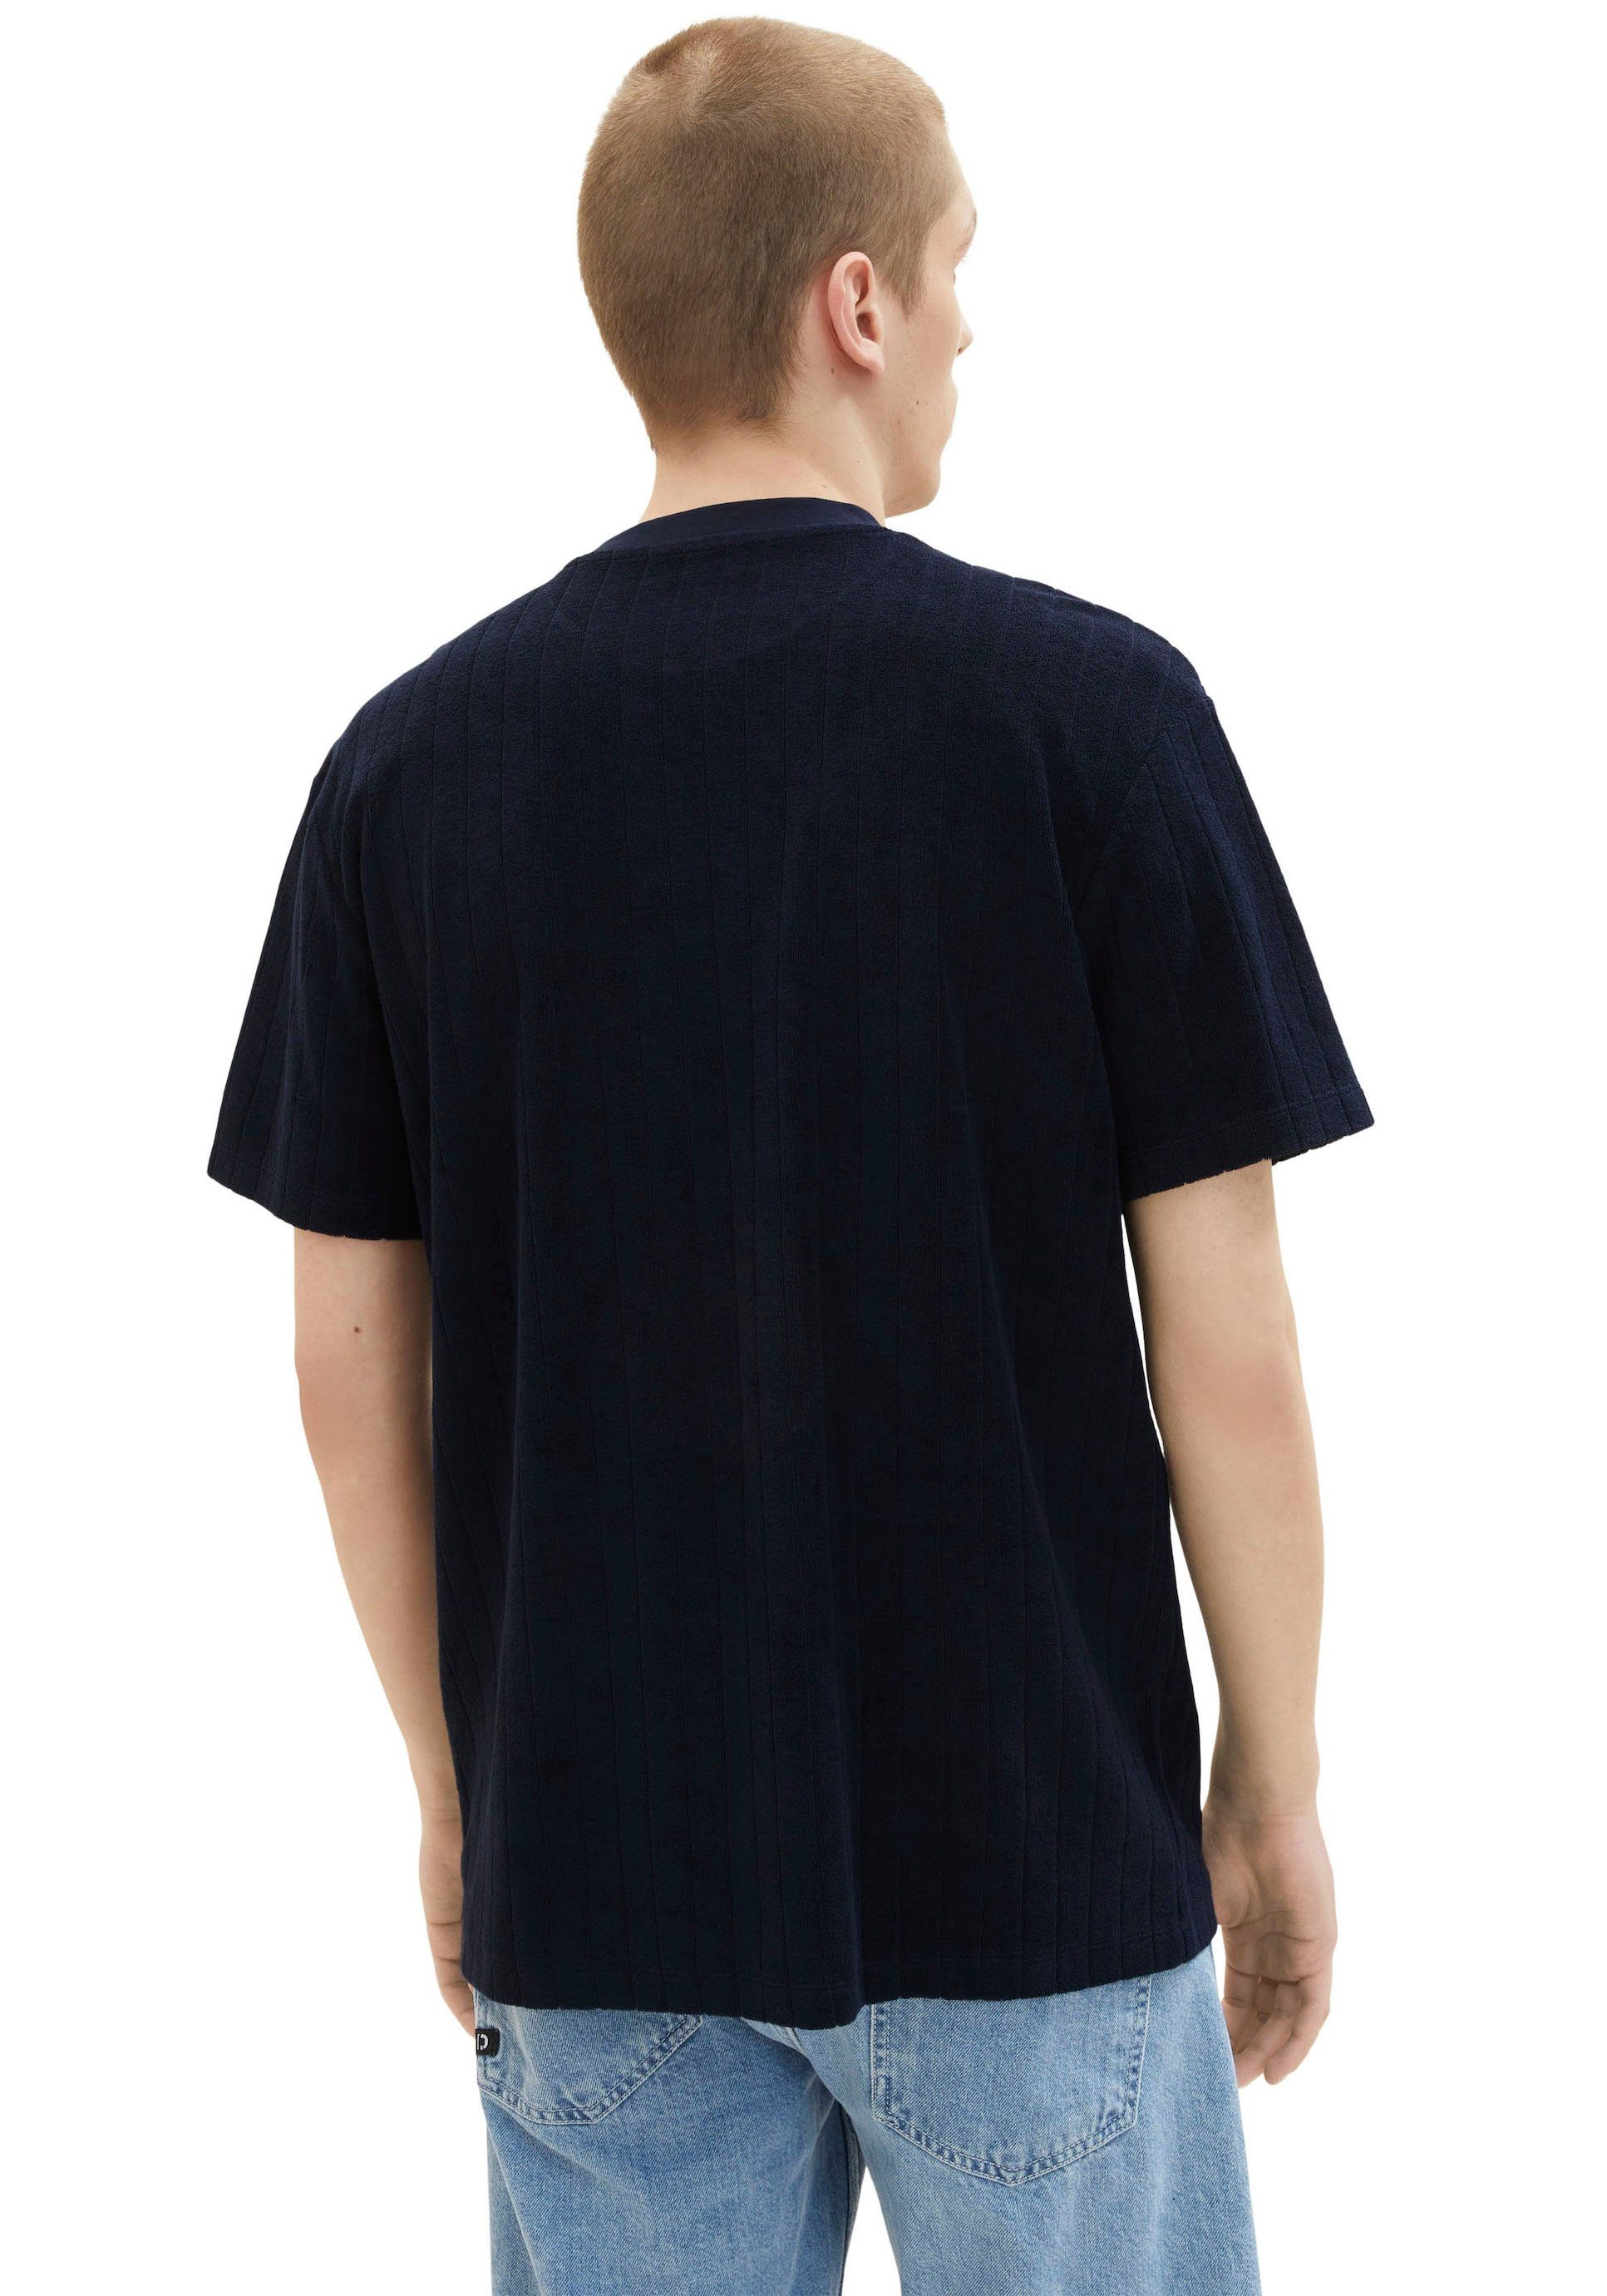 strukturierter TAILOR Denim Sweatware navy aus TOM gemustert T-Shirt